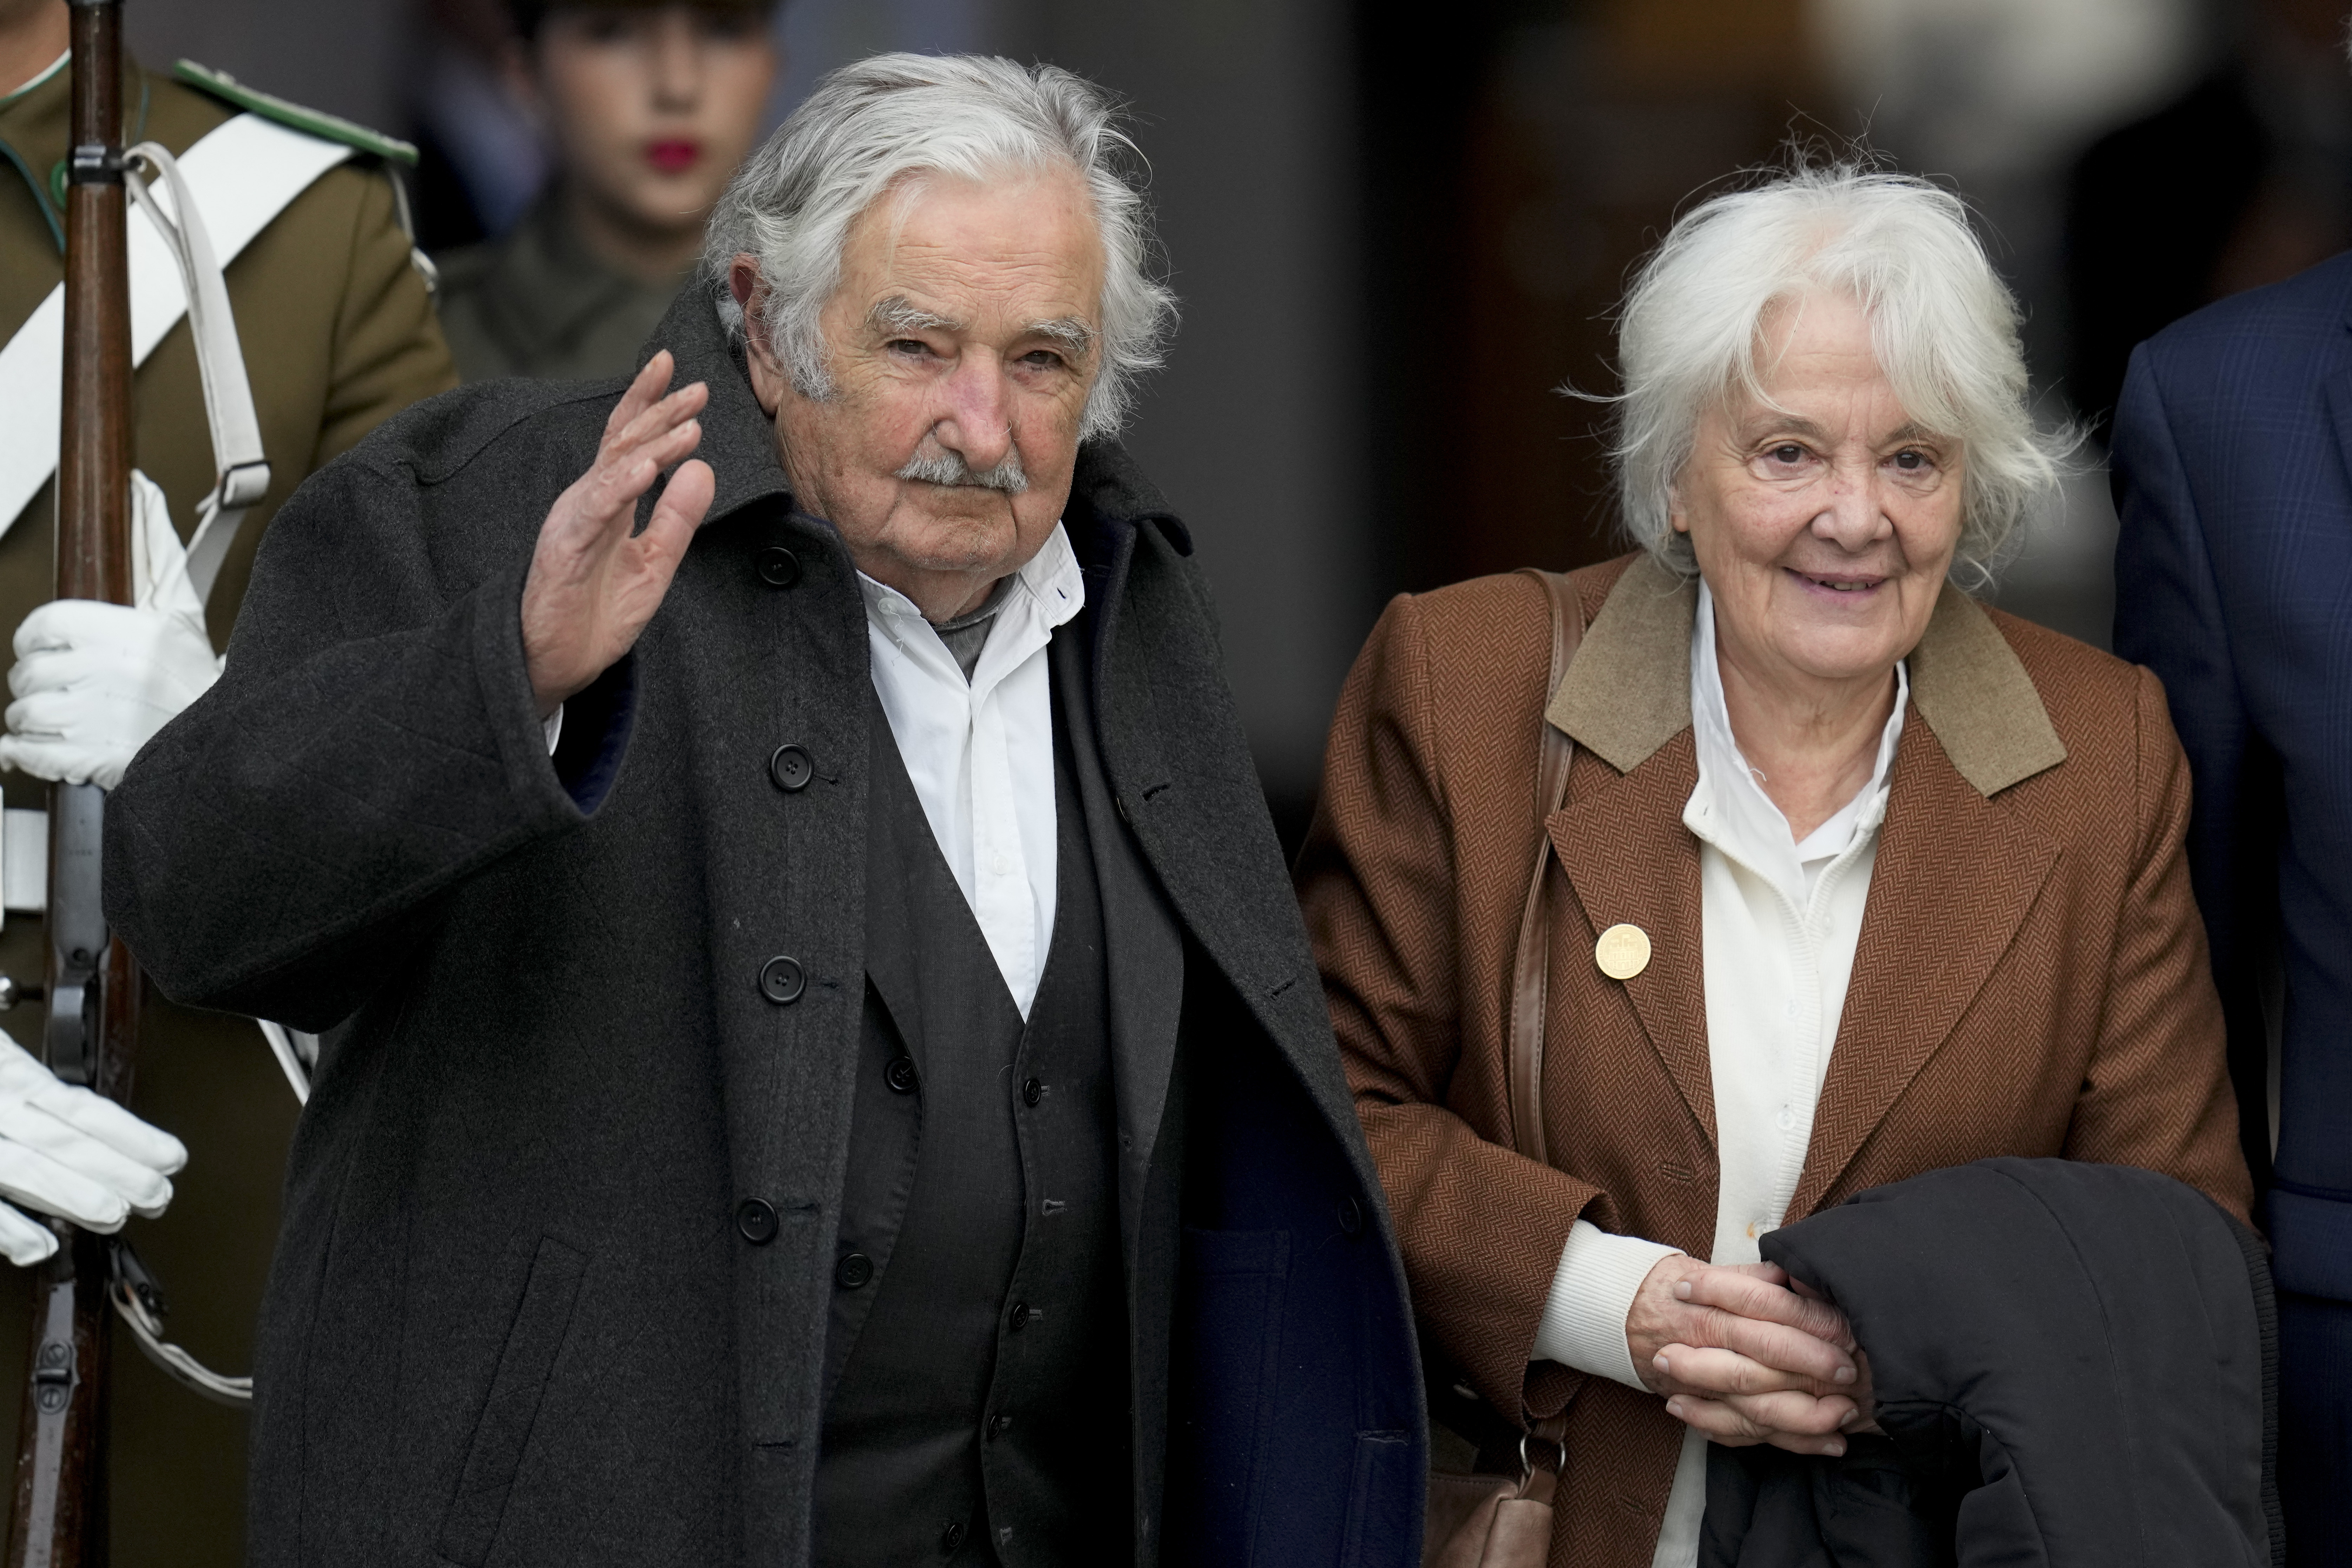 El ex presidente uruguayo José Mujica anunció que tiene un tumor en el esófago